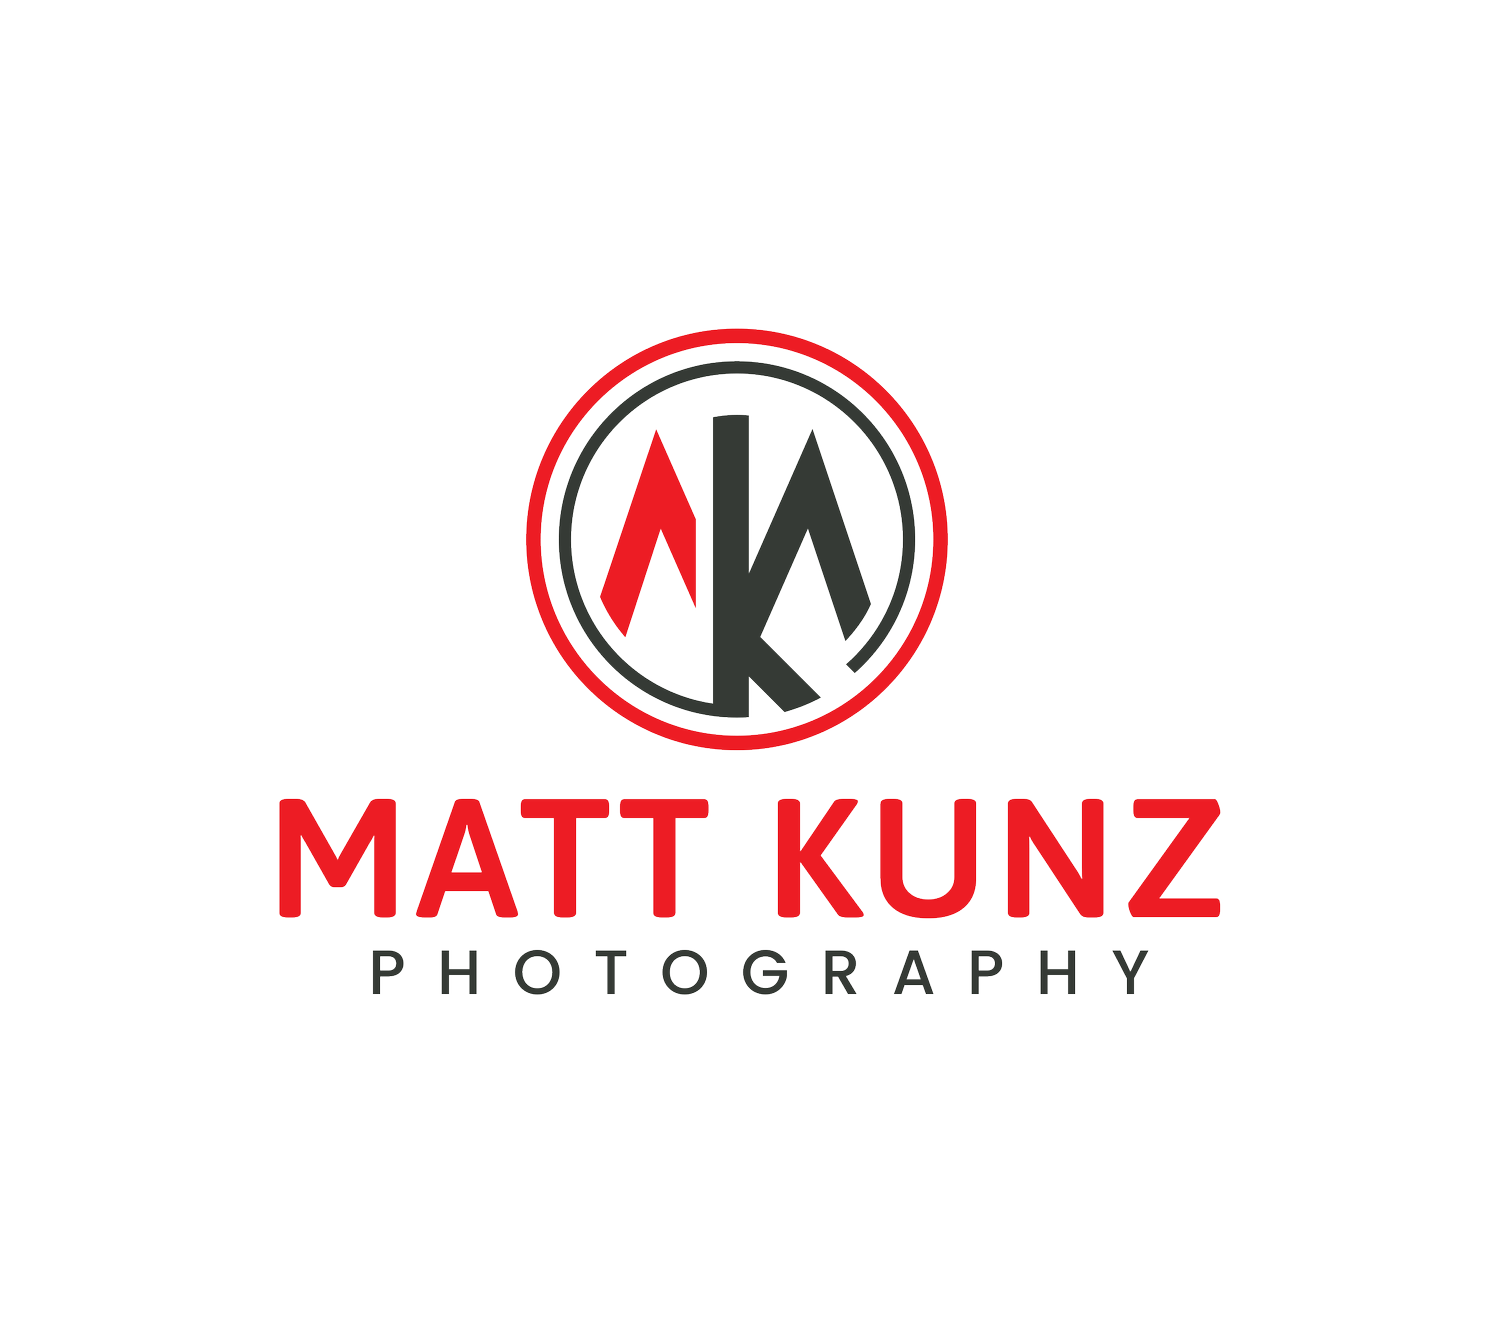 Matt Kunz Photography